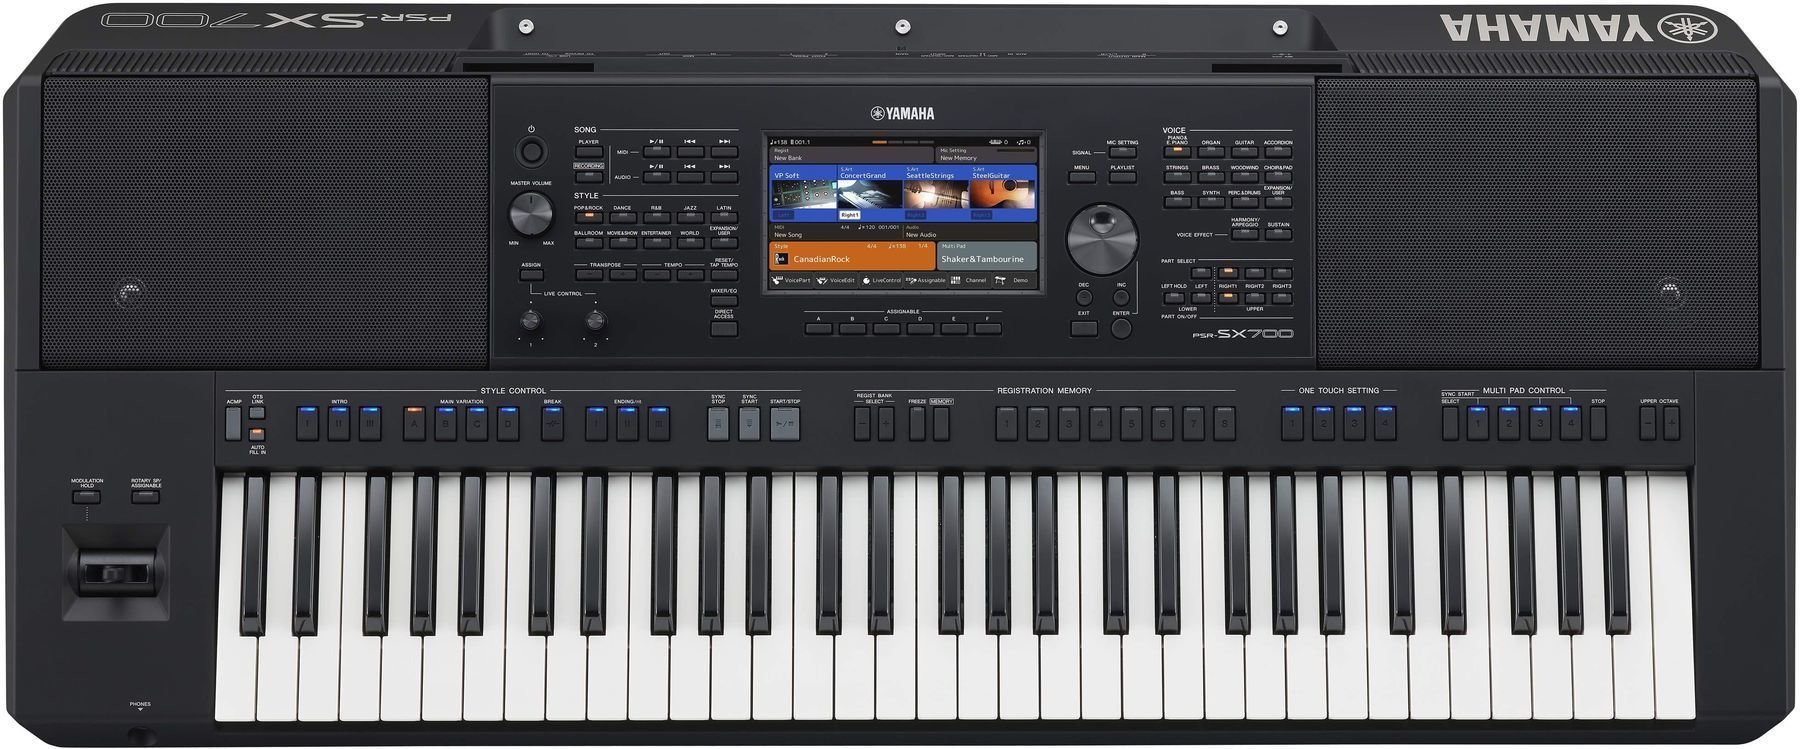 Professional Keyboard Yamaha PSR-SX700